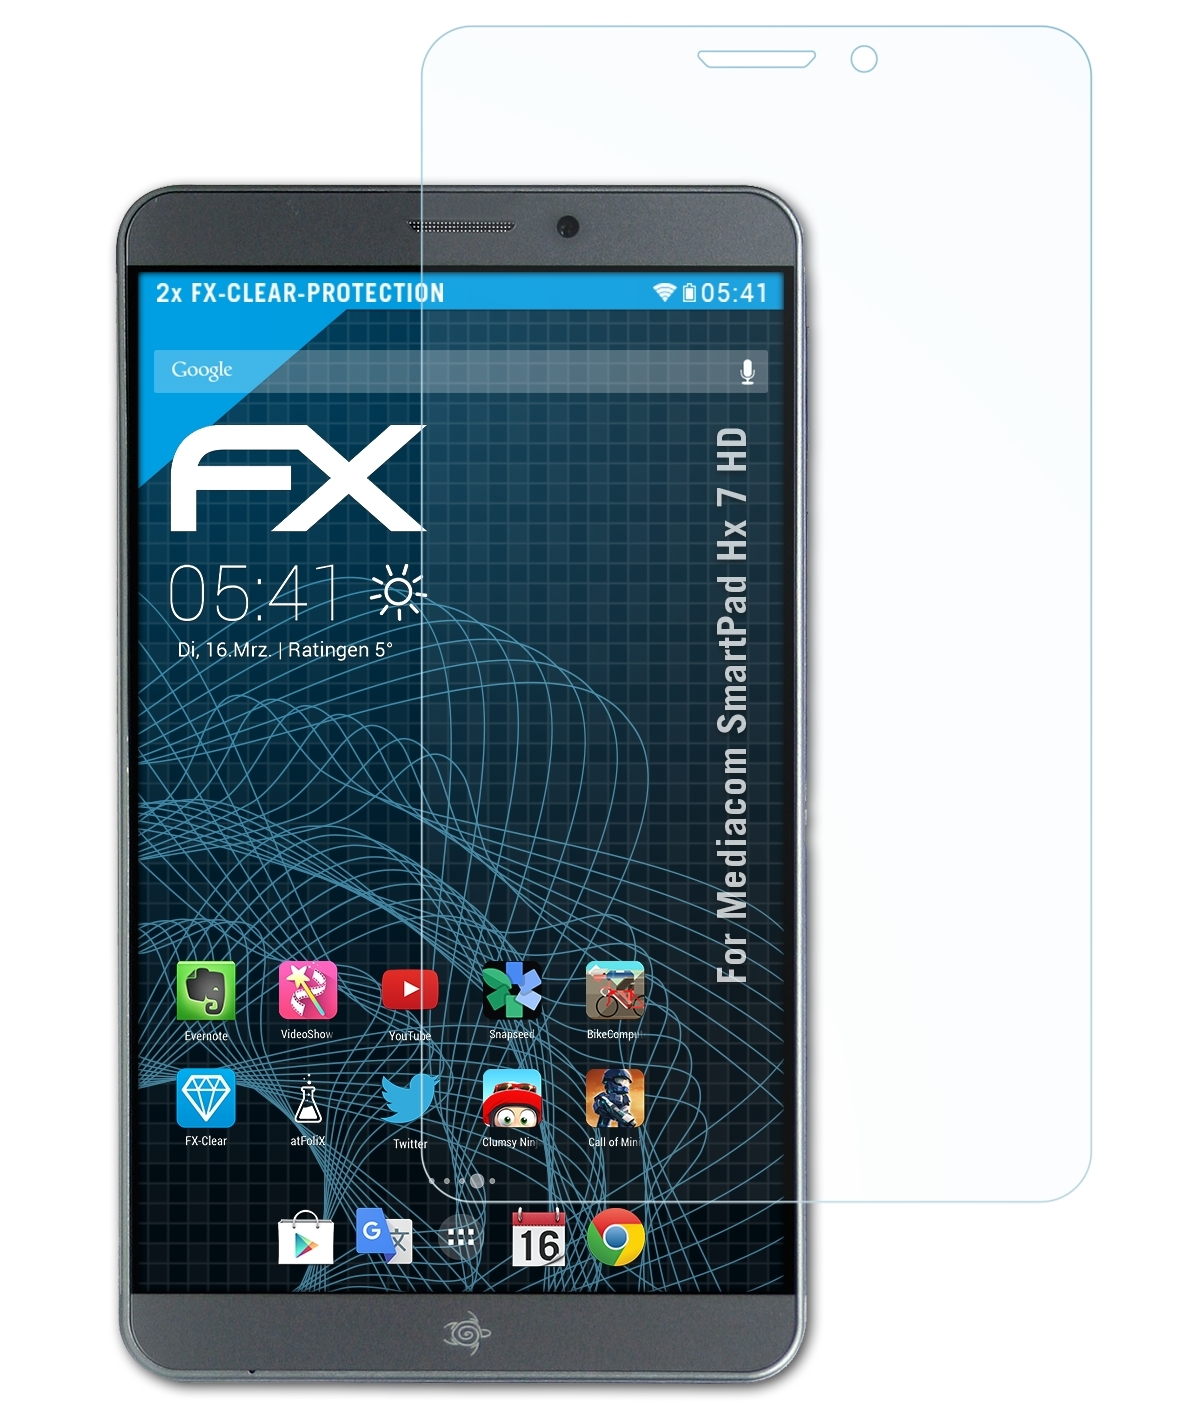 7 HD) Hx Mediacom FX-Clear Displayschutz(für SmartPad ATFOLIX 2x